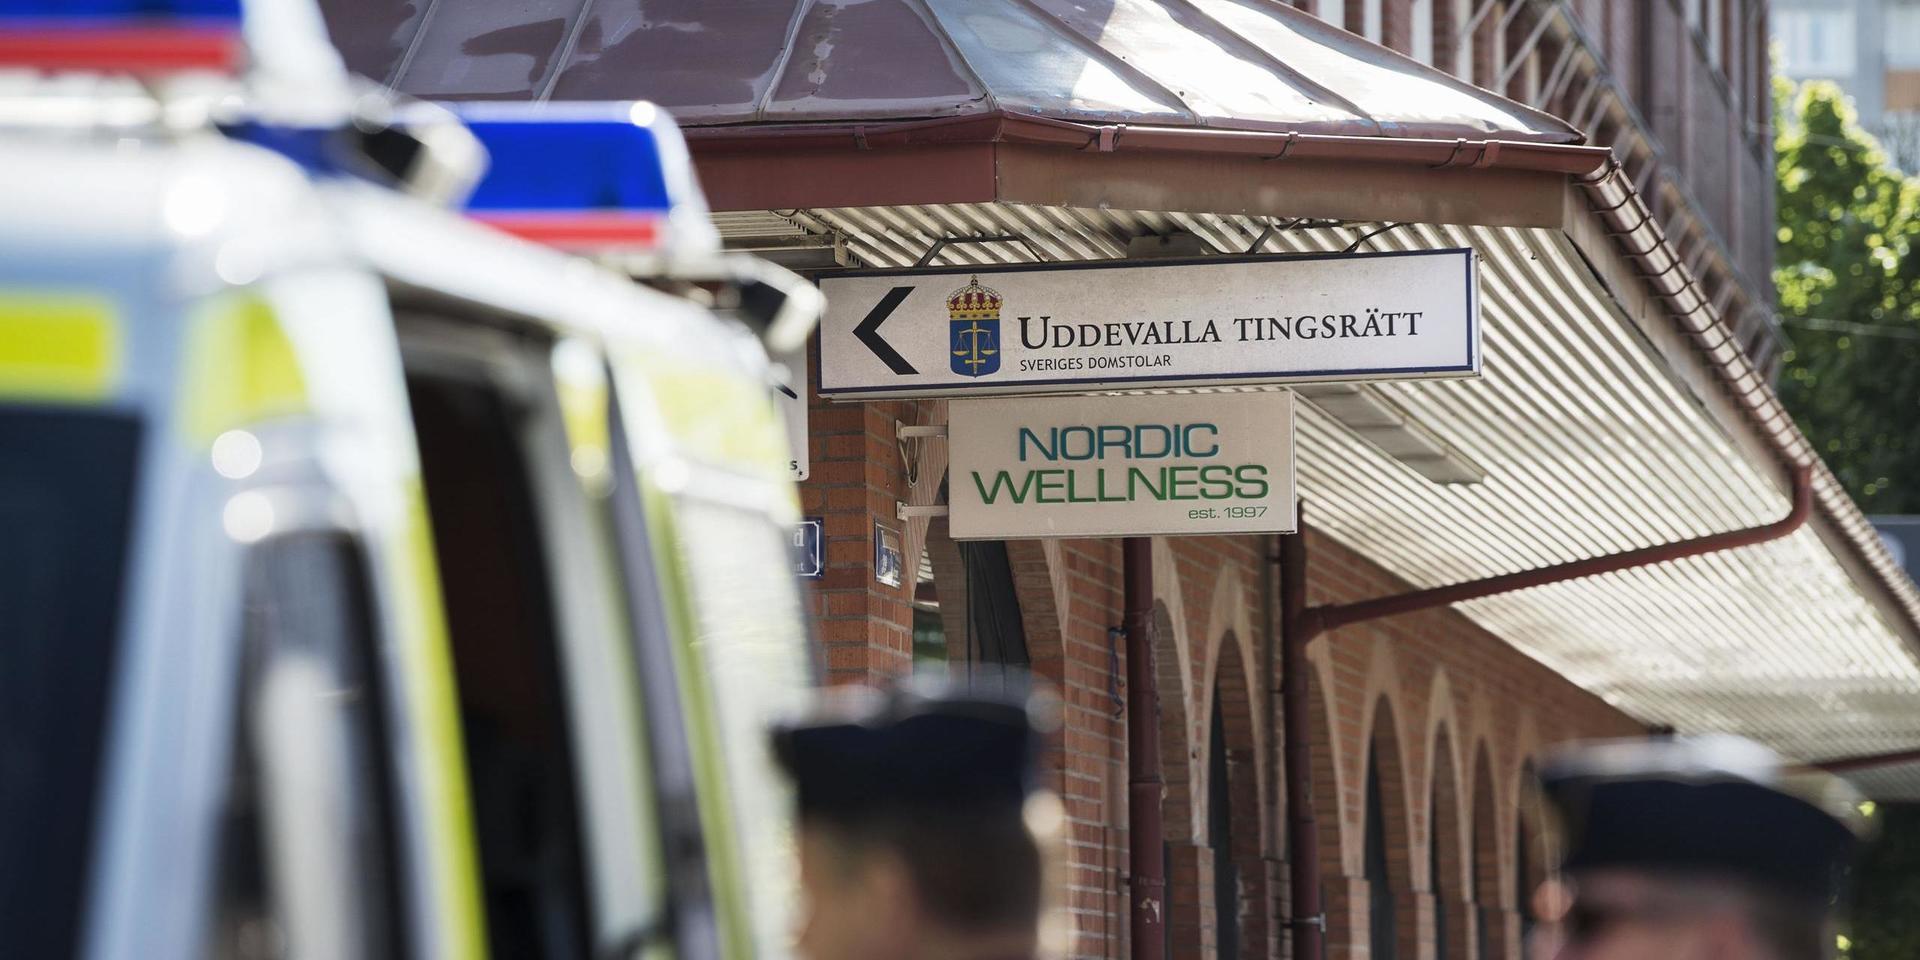 Under rättegången var polispatruller på plats utanför Uddevalla tingsrätt